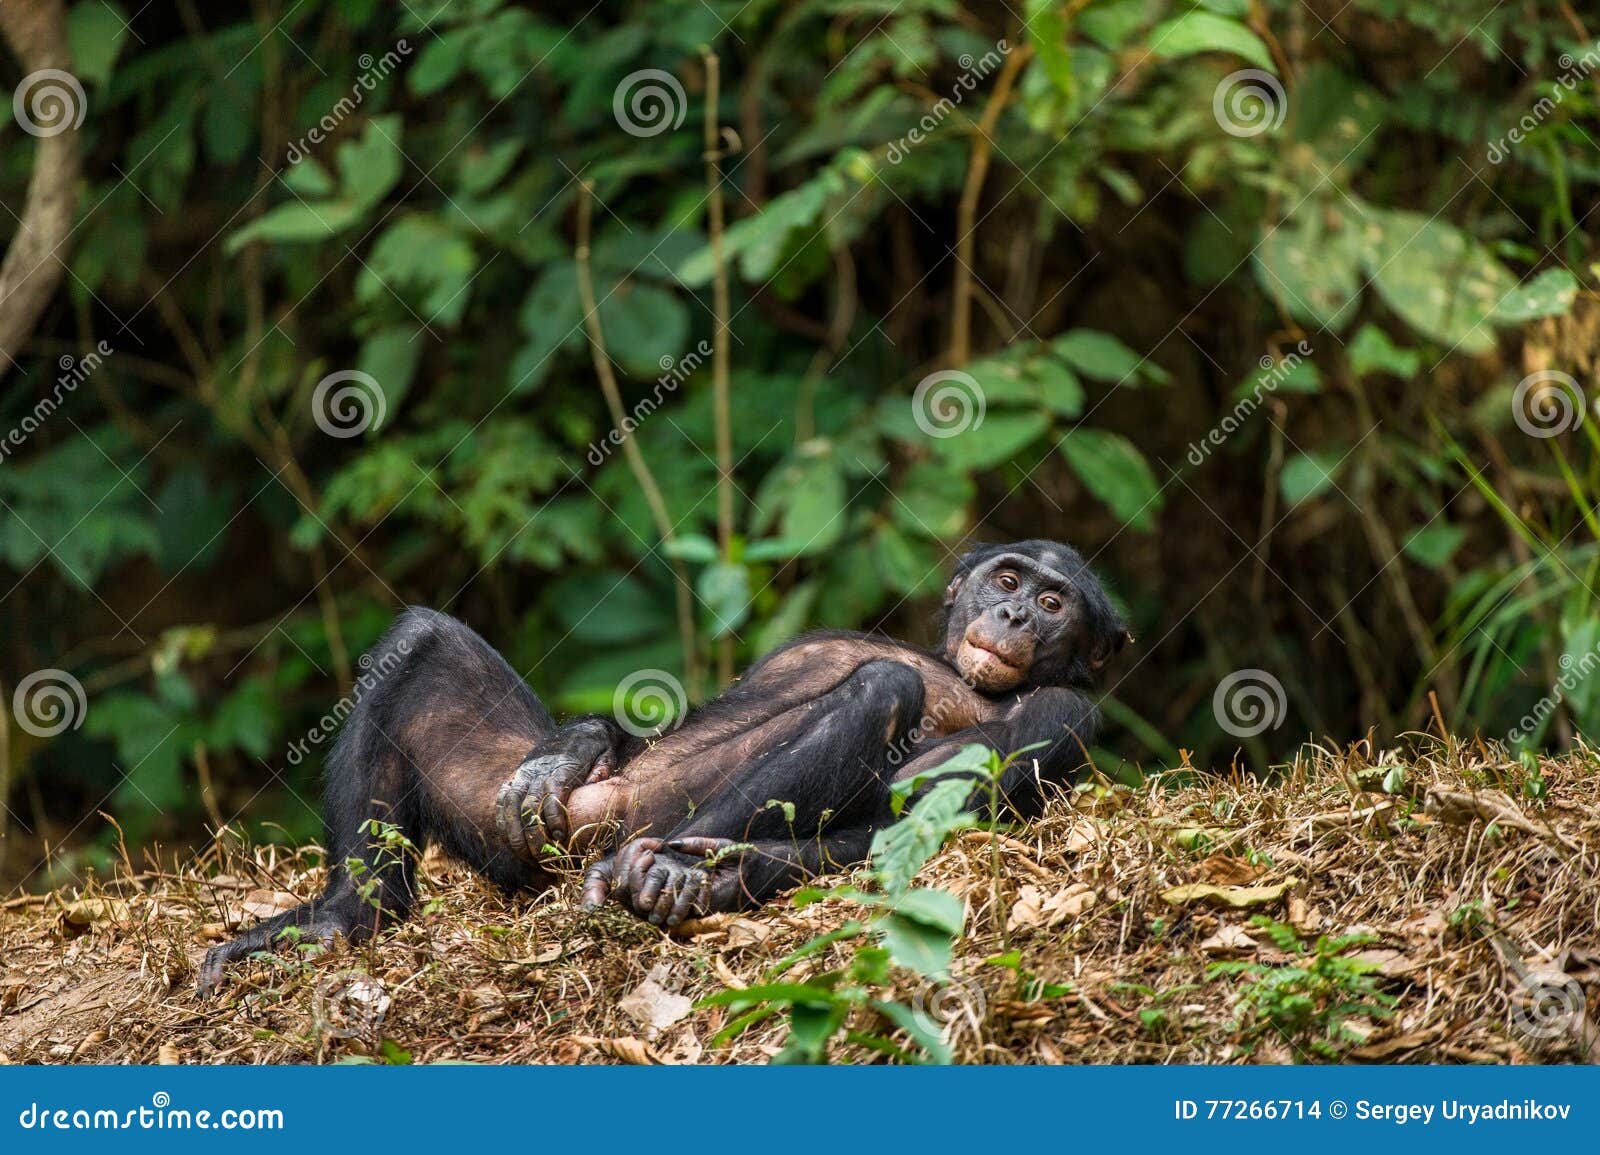 the bonobo ( pan paniscus)